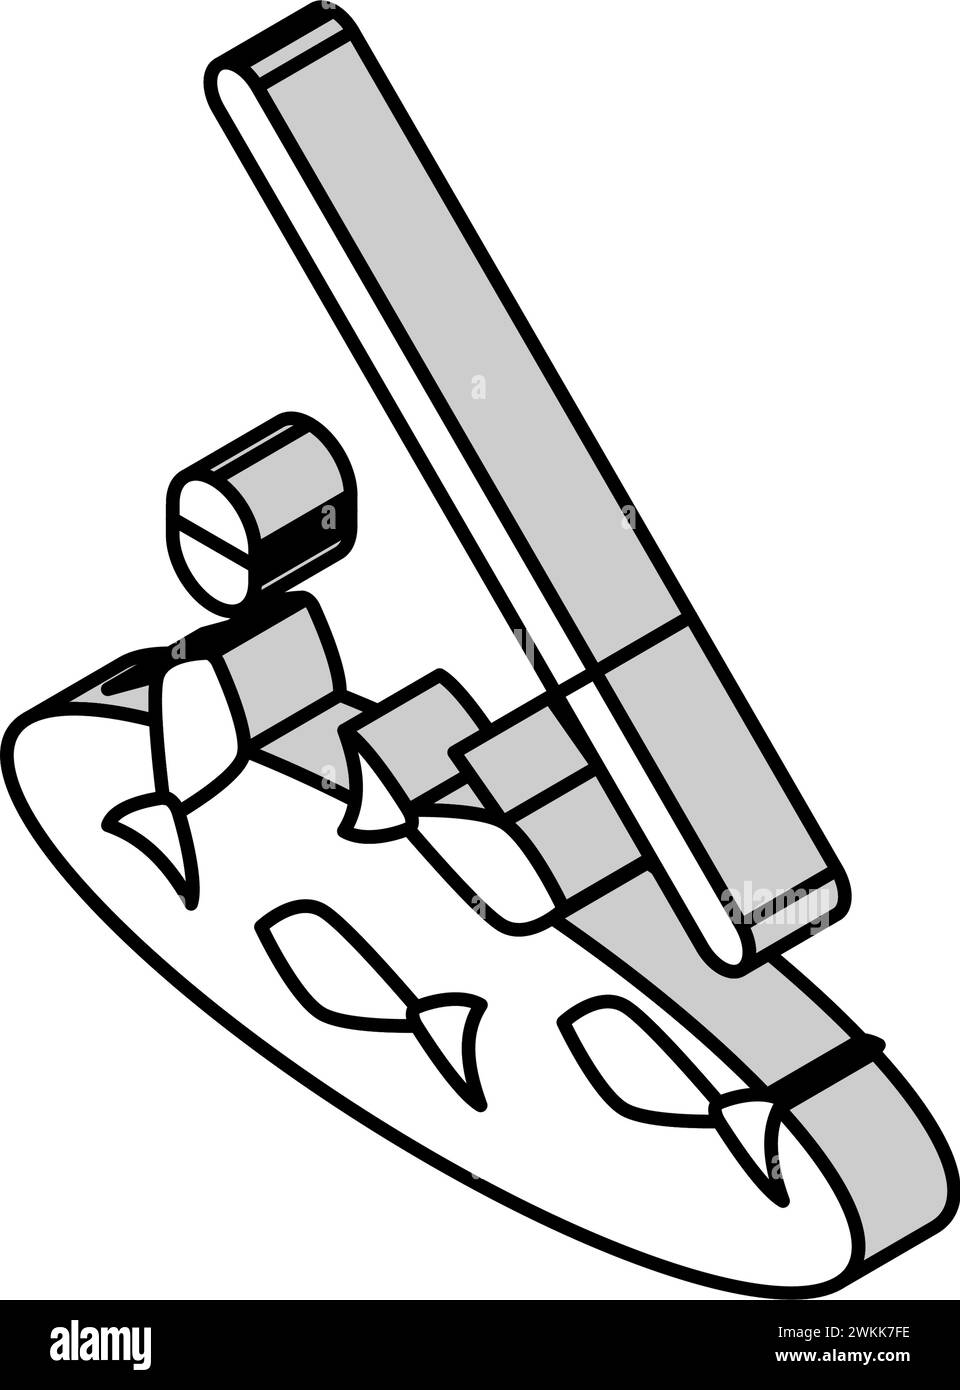 Darstellung des isometrischen Symbols für den Tisch des Angelbretts Stock Vektor